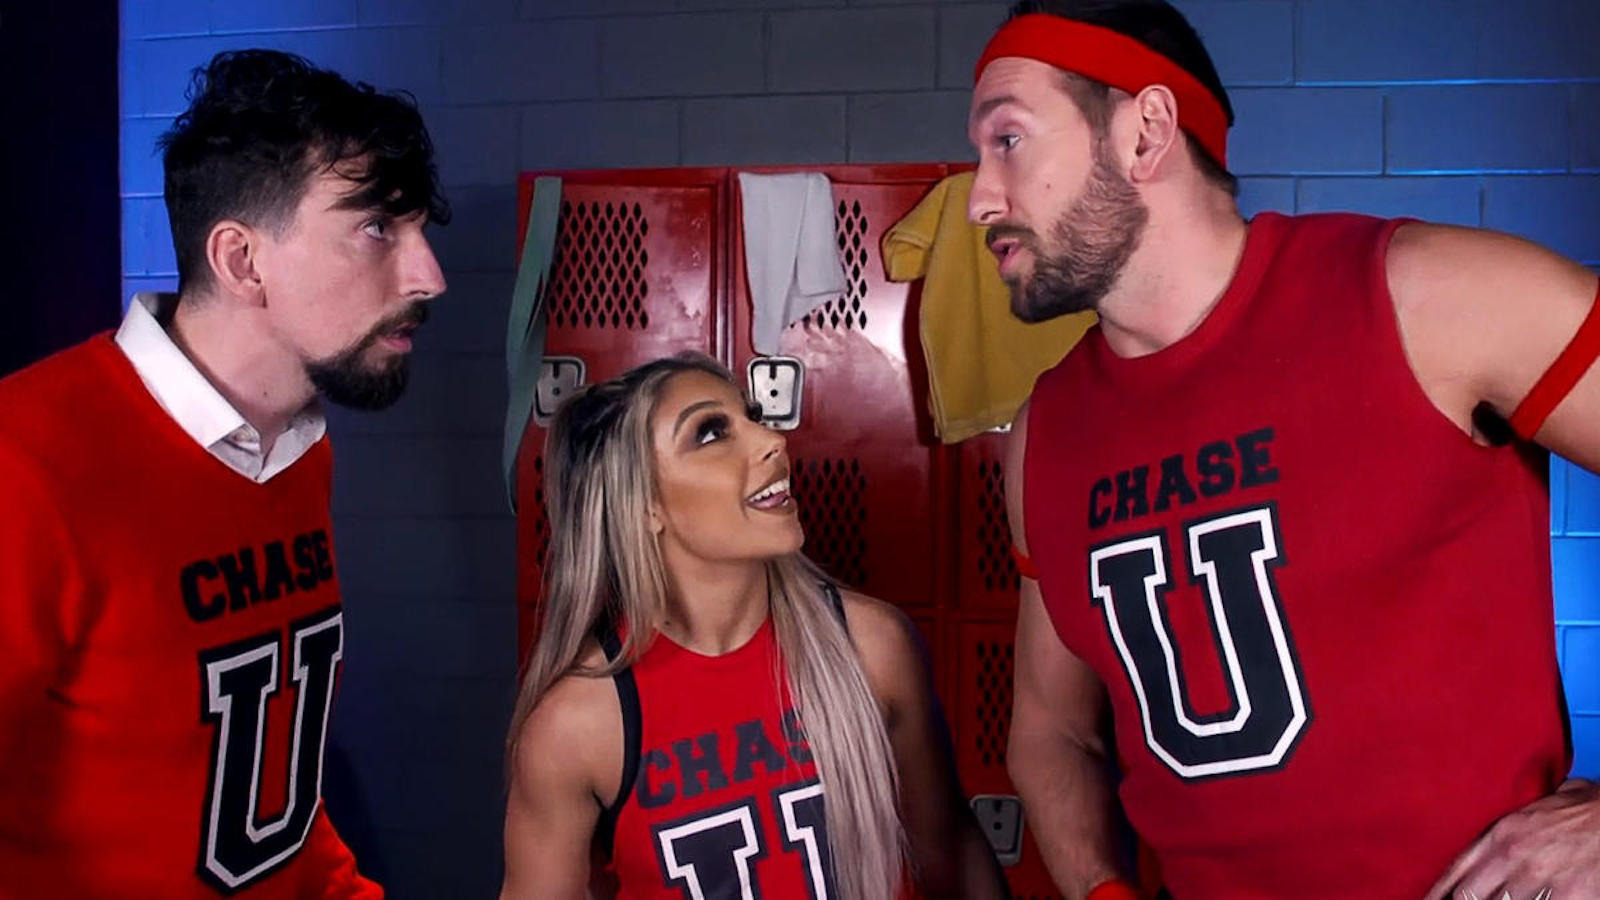 Chase U entrega los títulos de etiqueta de WWE NXT a la familia D'Angelo después de la huelga de la sección de estudiantes